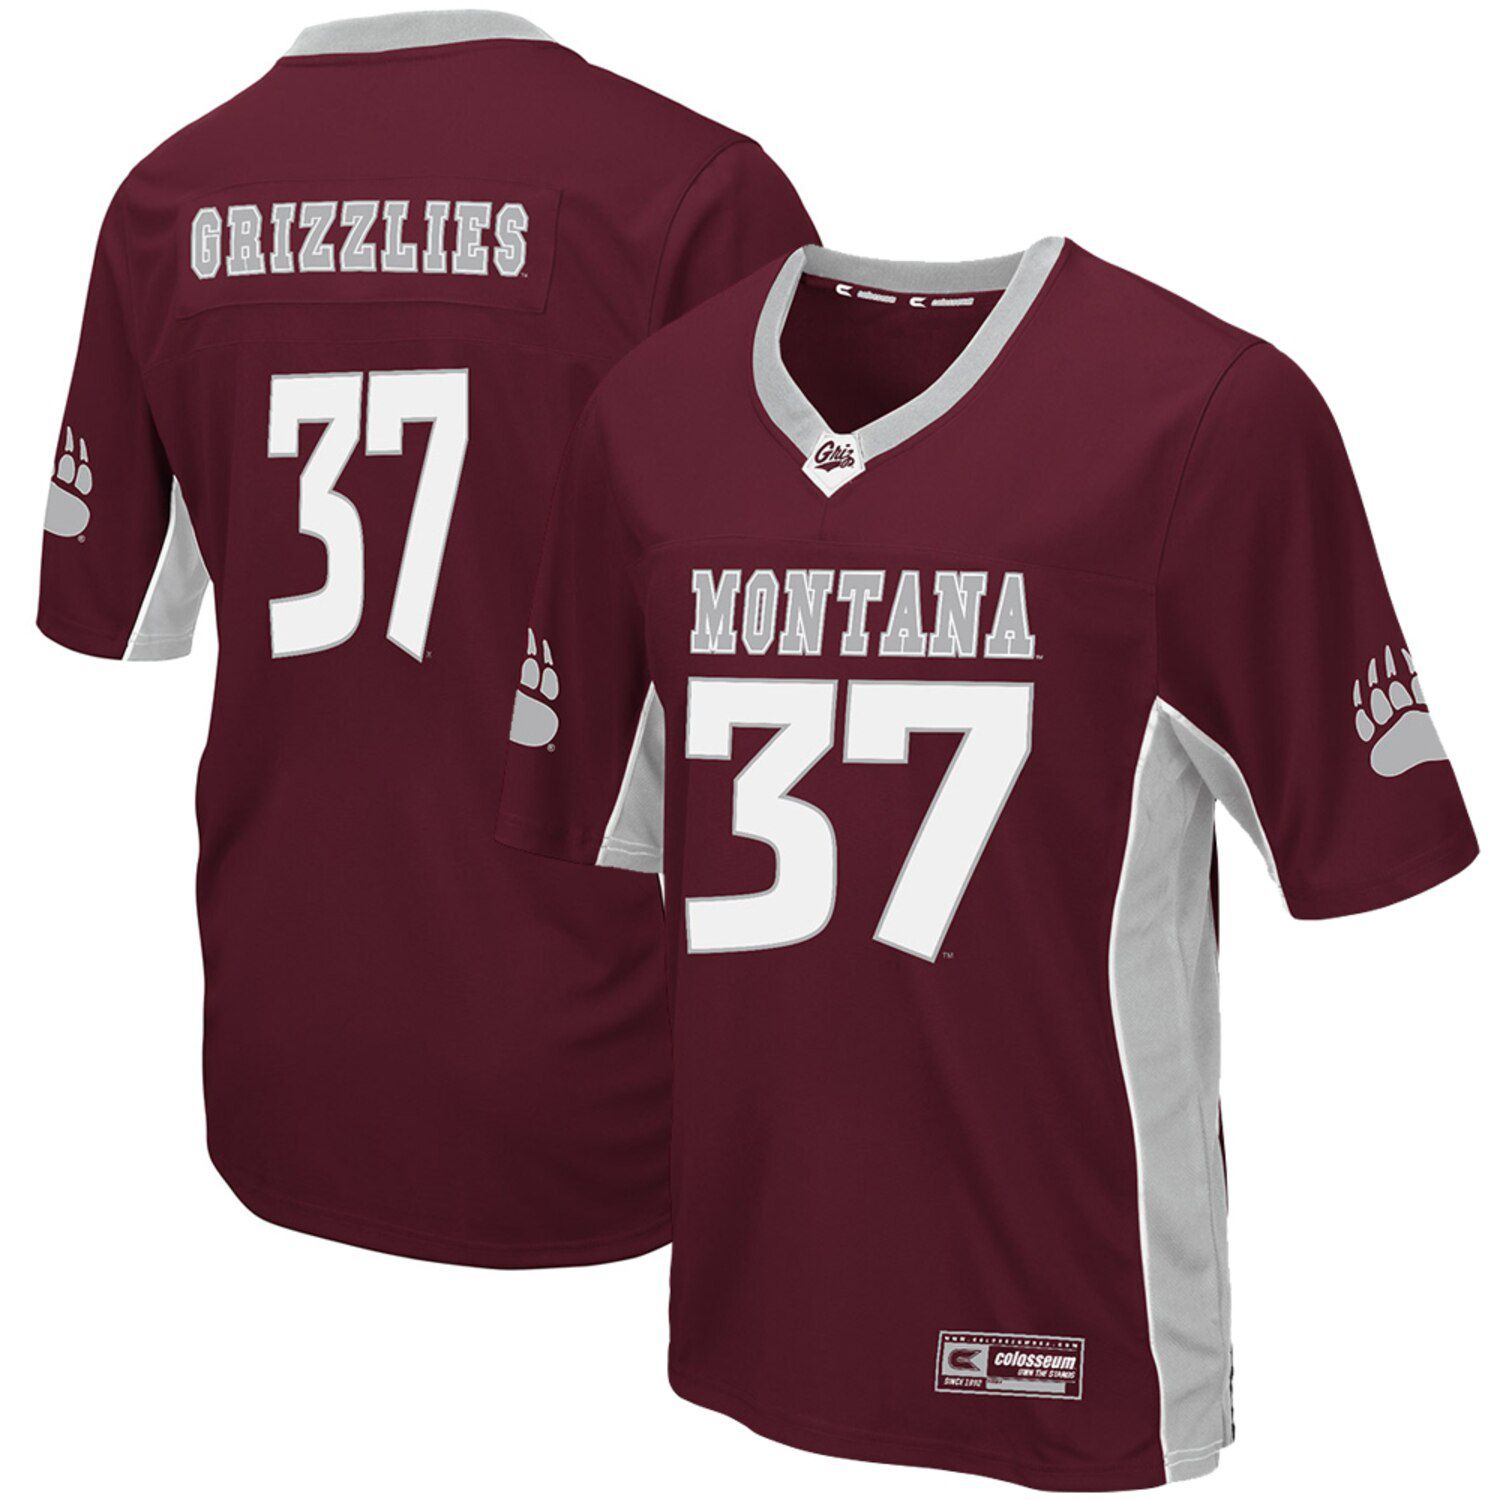 montana grizzlies football jersey